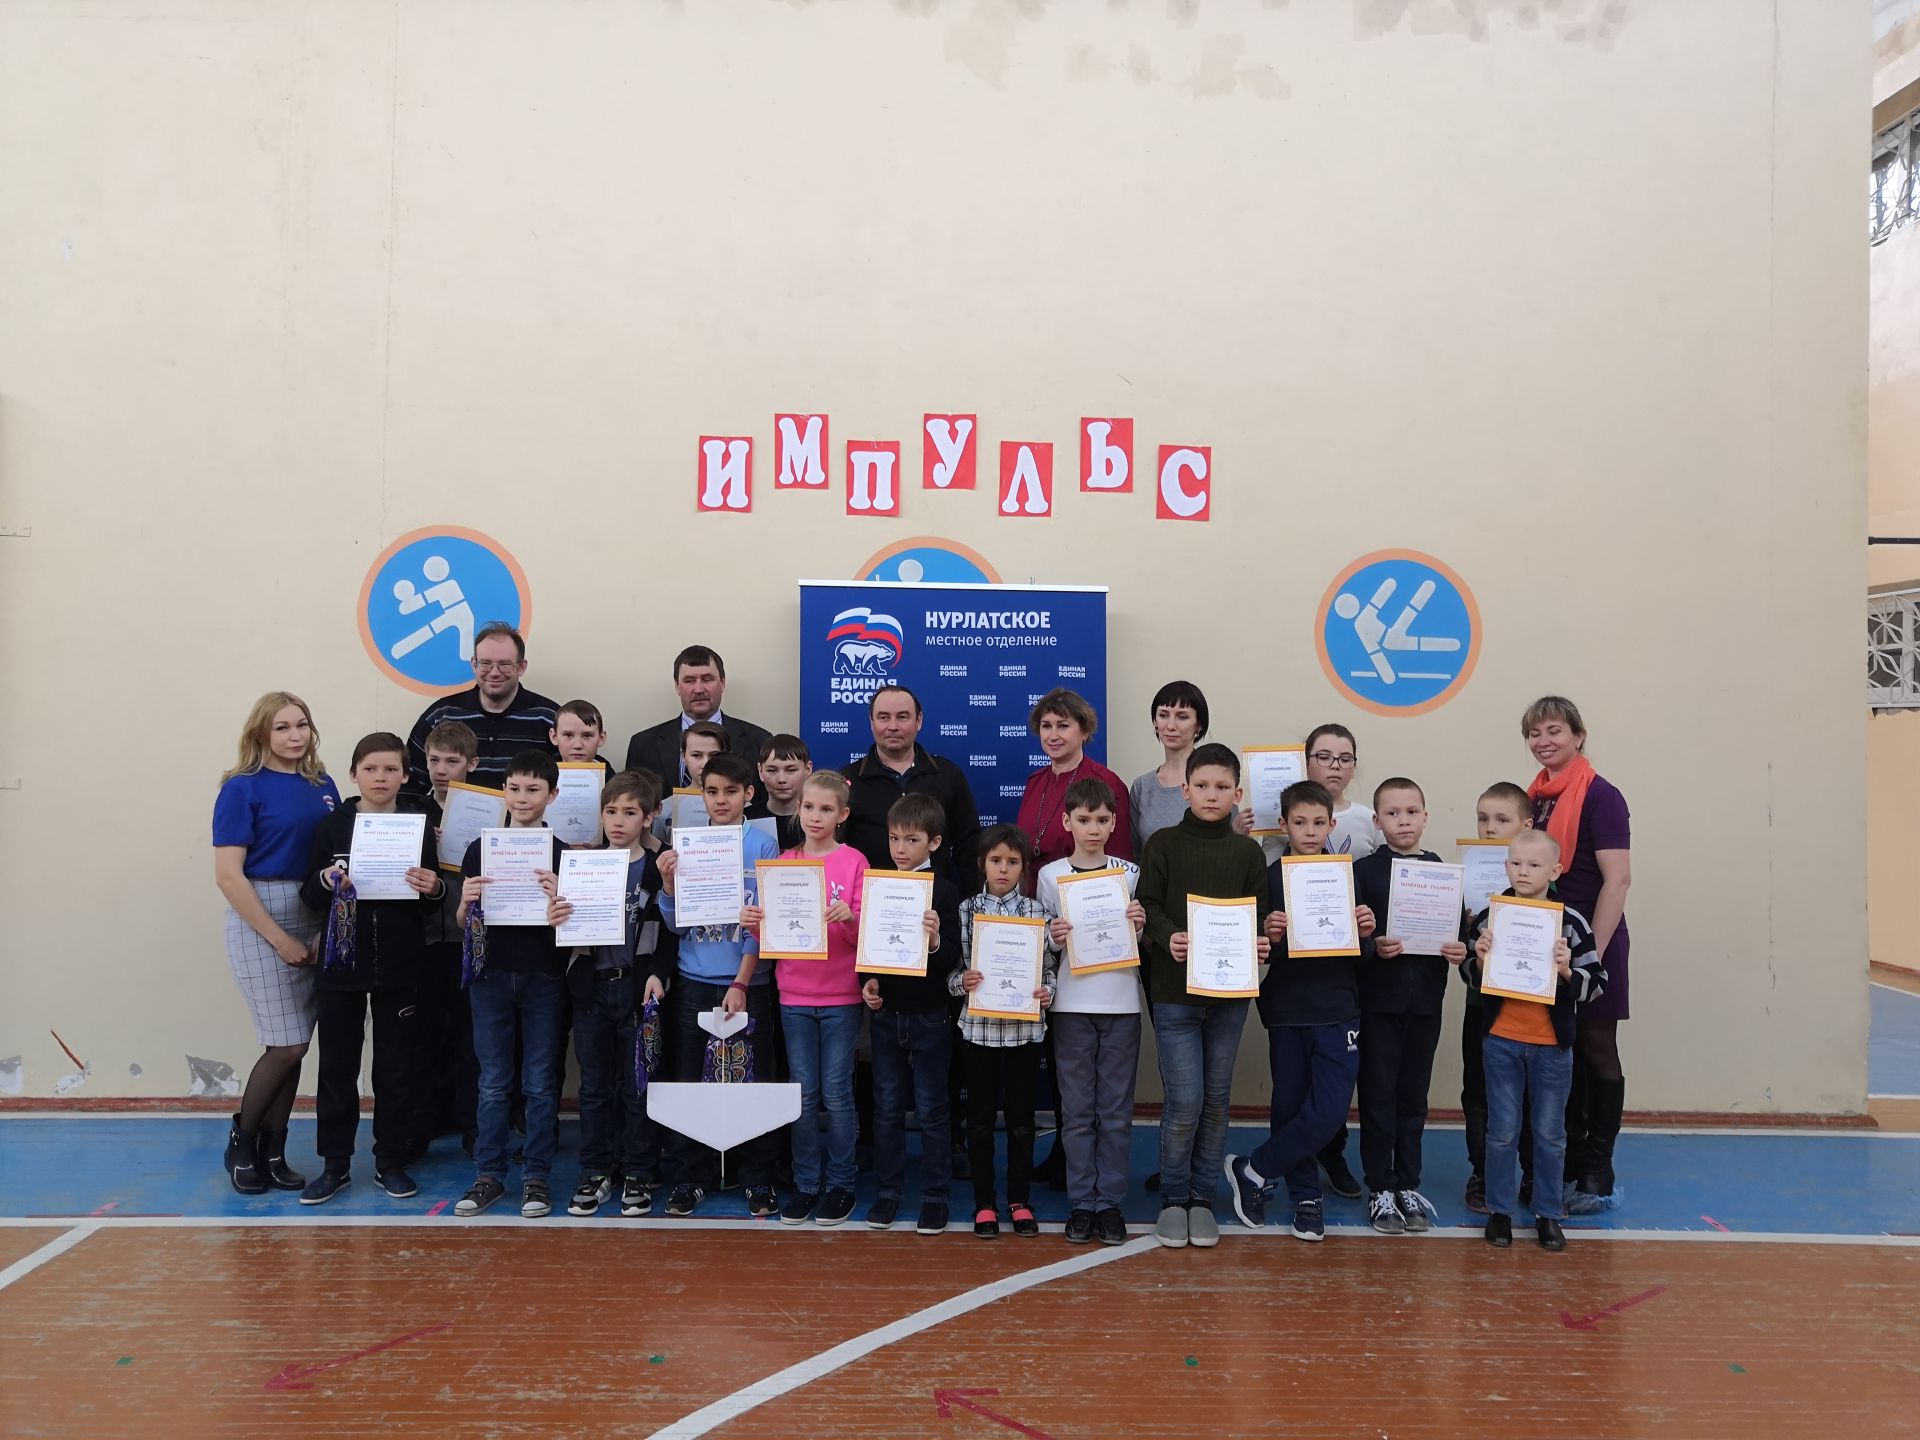 Юных авиаконструкторов Нурлата собрал районный конкурс «Импульс»